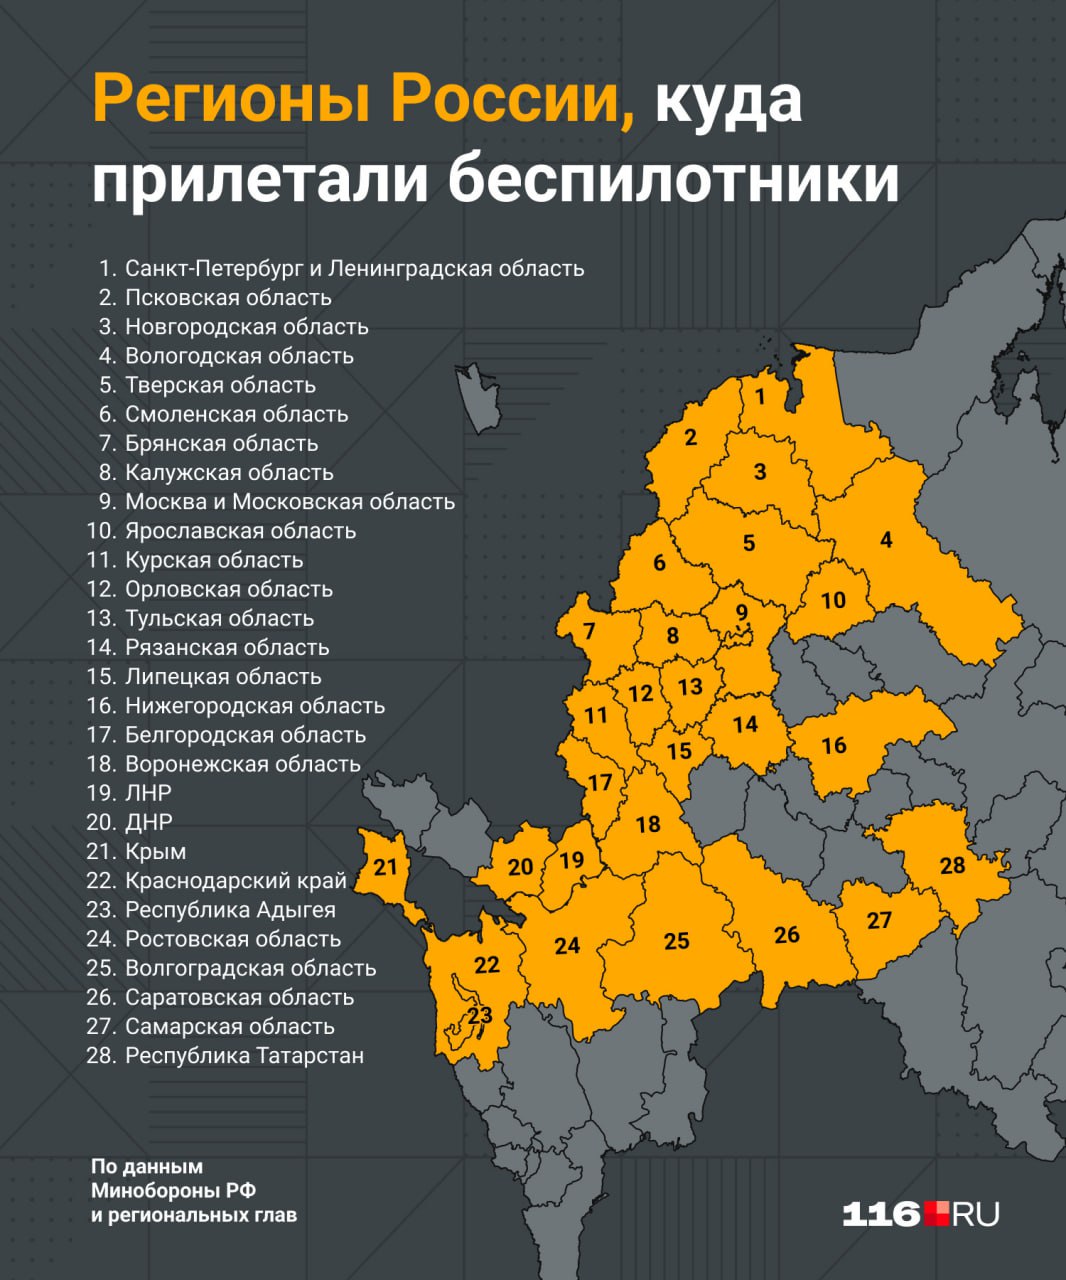 «Начался штурм Часова Яра…»: Карта боевых действий 5 апреля 2024 на Украине — новости из зоны СВО (Обновлено)